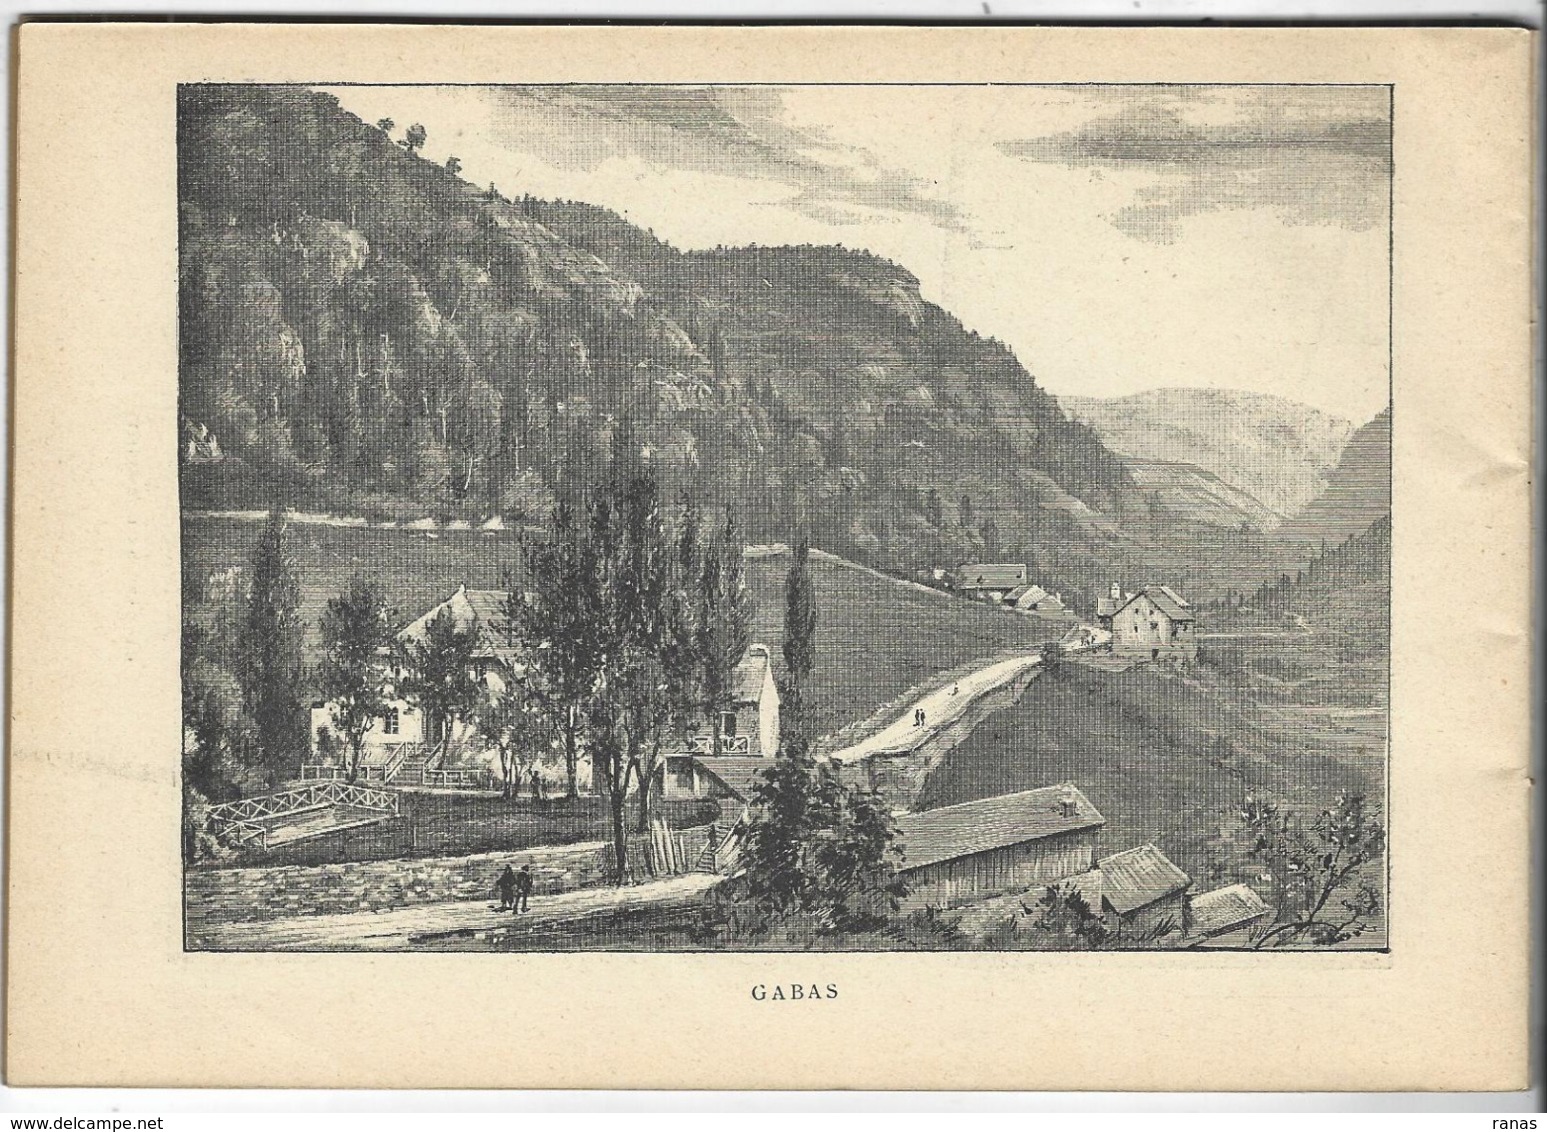 Basses Pyrénées France Album De A. KARL, Carte Gravures Texte Publicités 1893 - Tourism Brochures